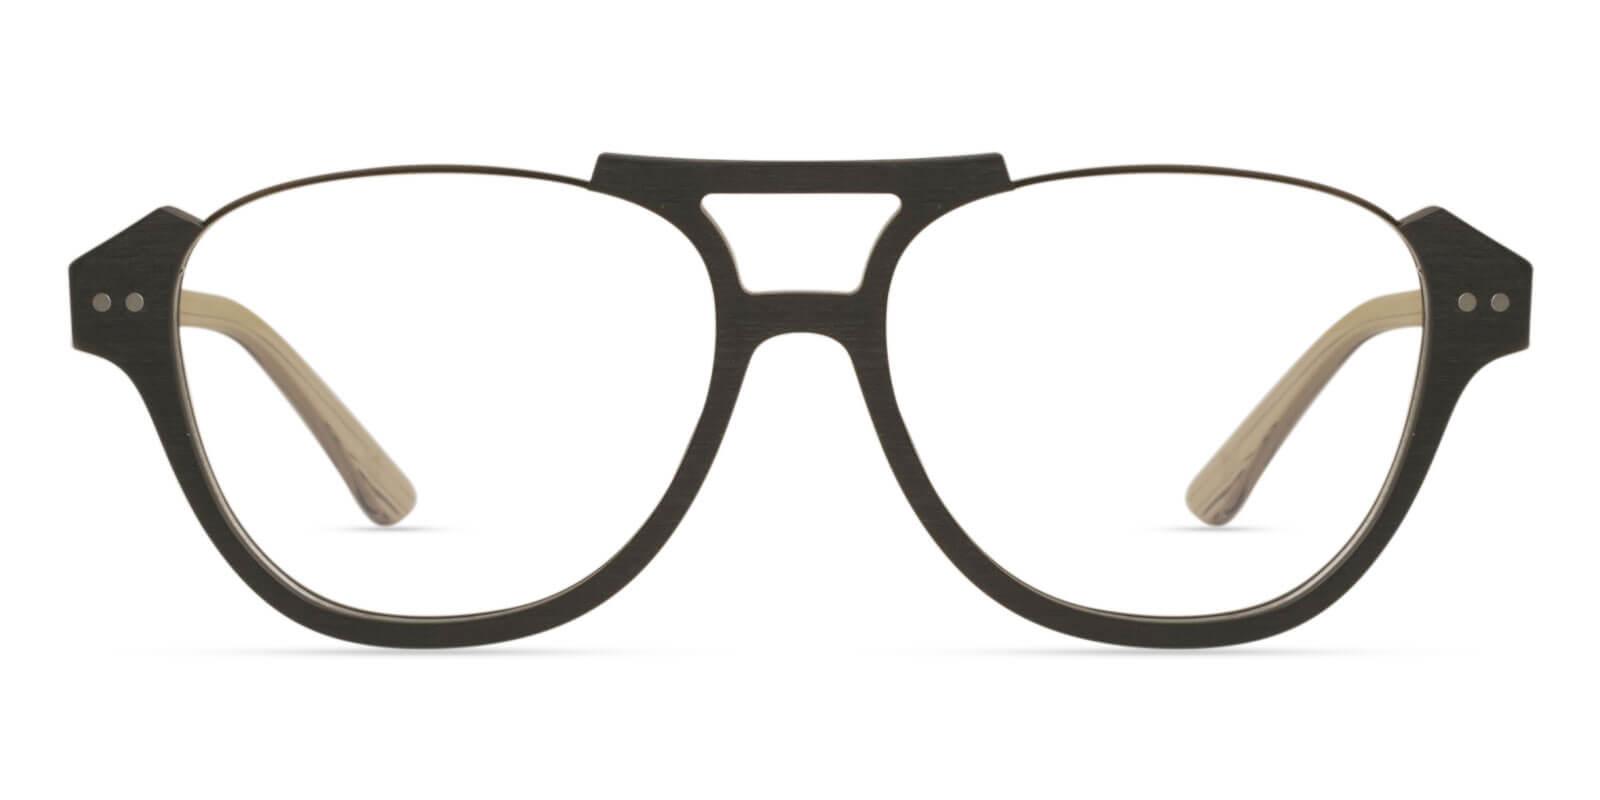 Ocean Gate Cream Combination Eyeglasses , UniversalBridgeFit Frames from ABBE Glasses